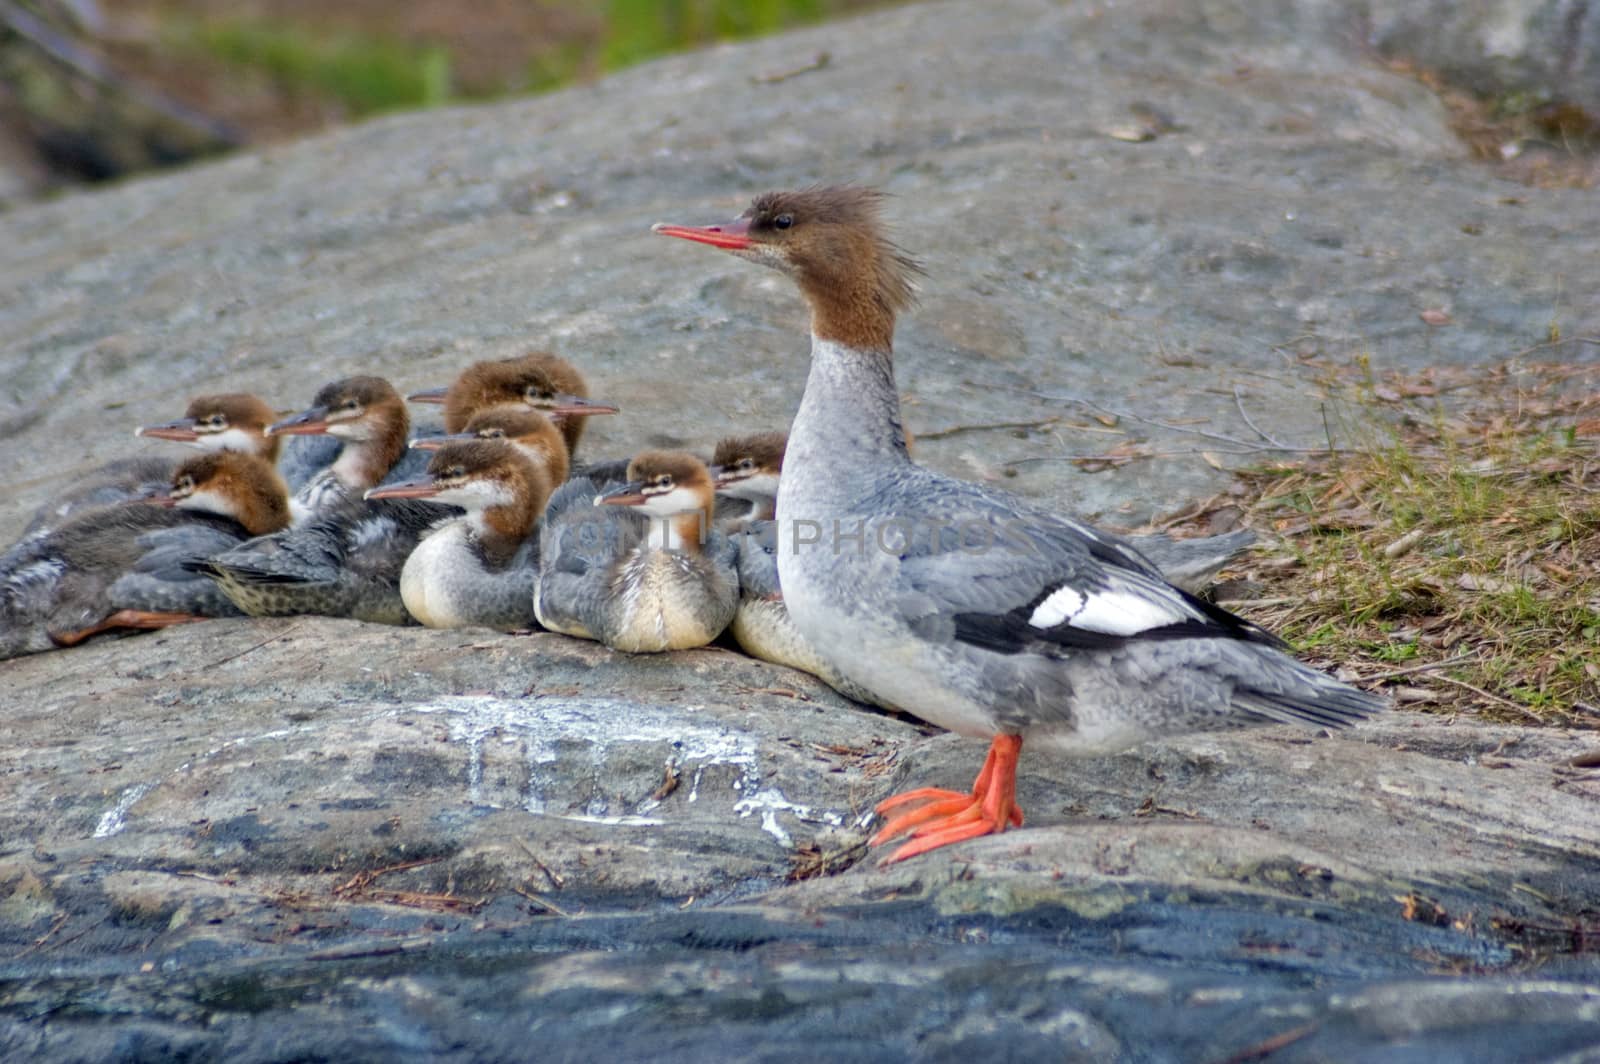 Common Merganser family on the rock shore of the lake